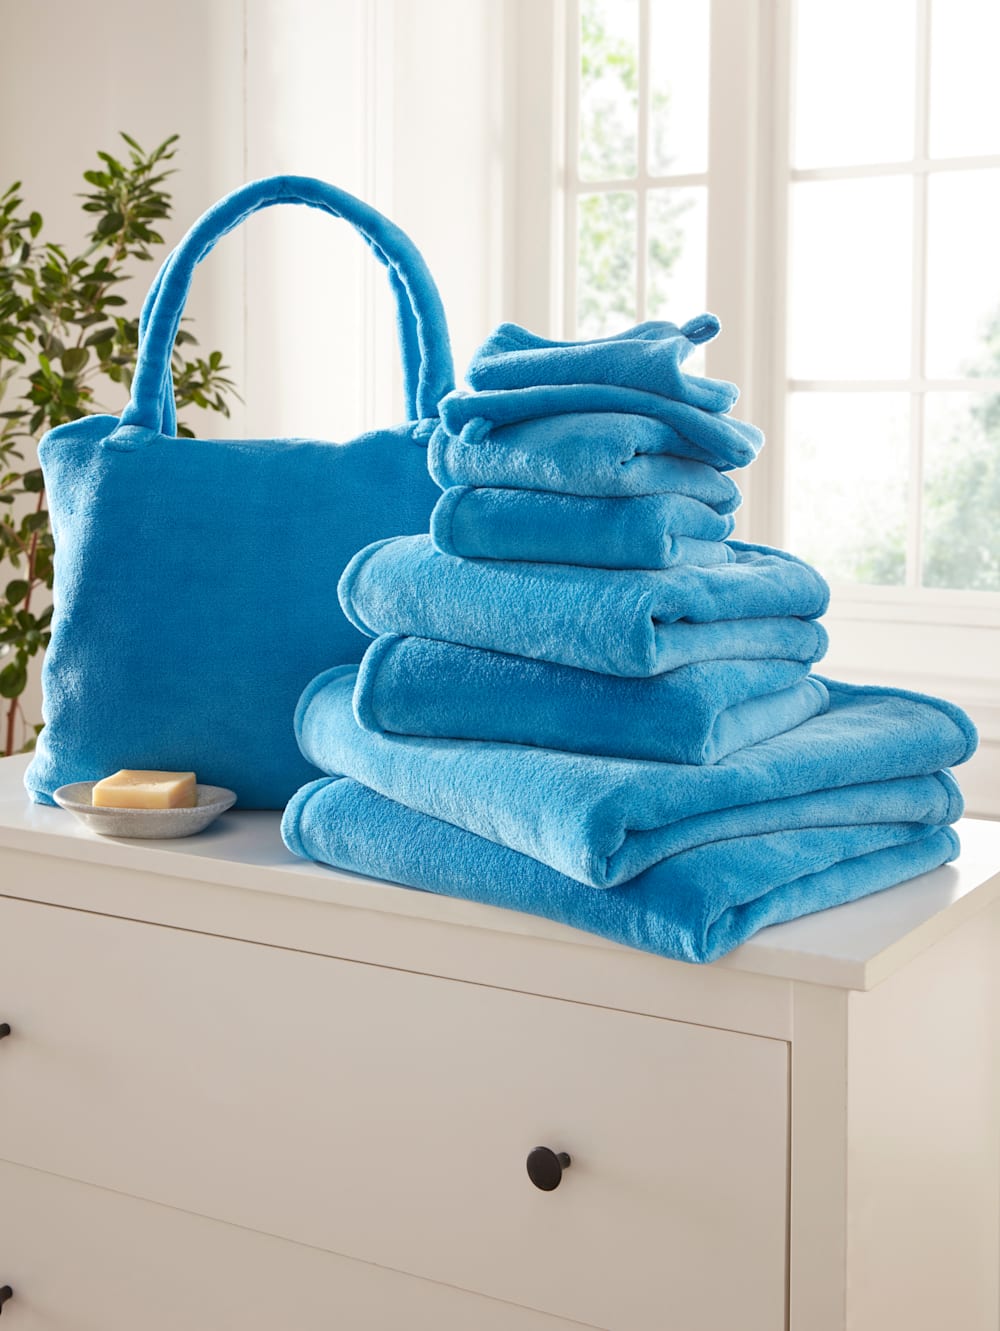 Webschatz 8-delige handdoekenset gratis |